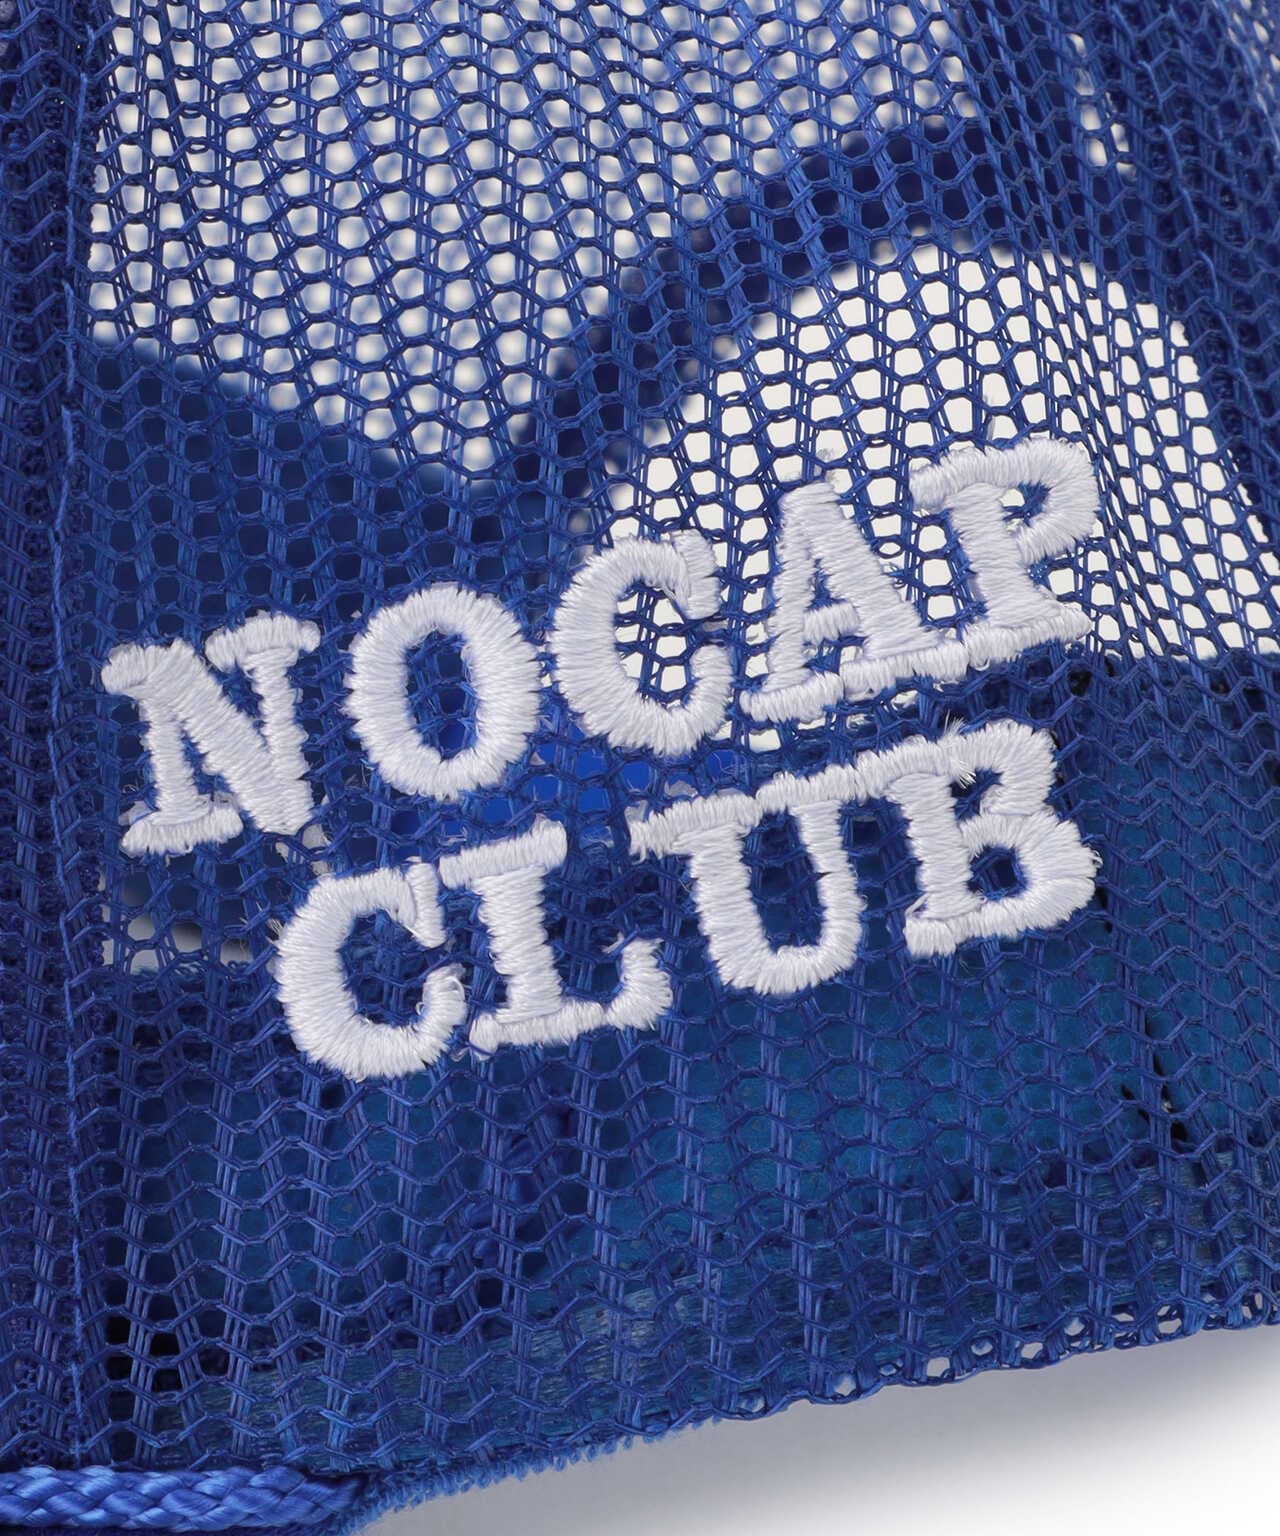 NOCAPCLUB/ノーキャップクラブ/Samurai Cap/キャップ